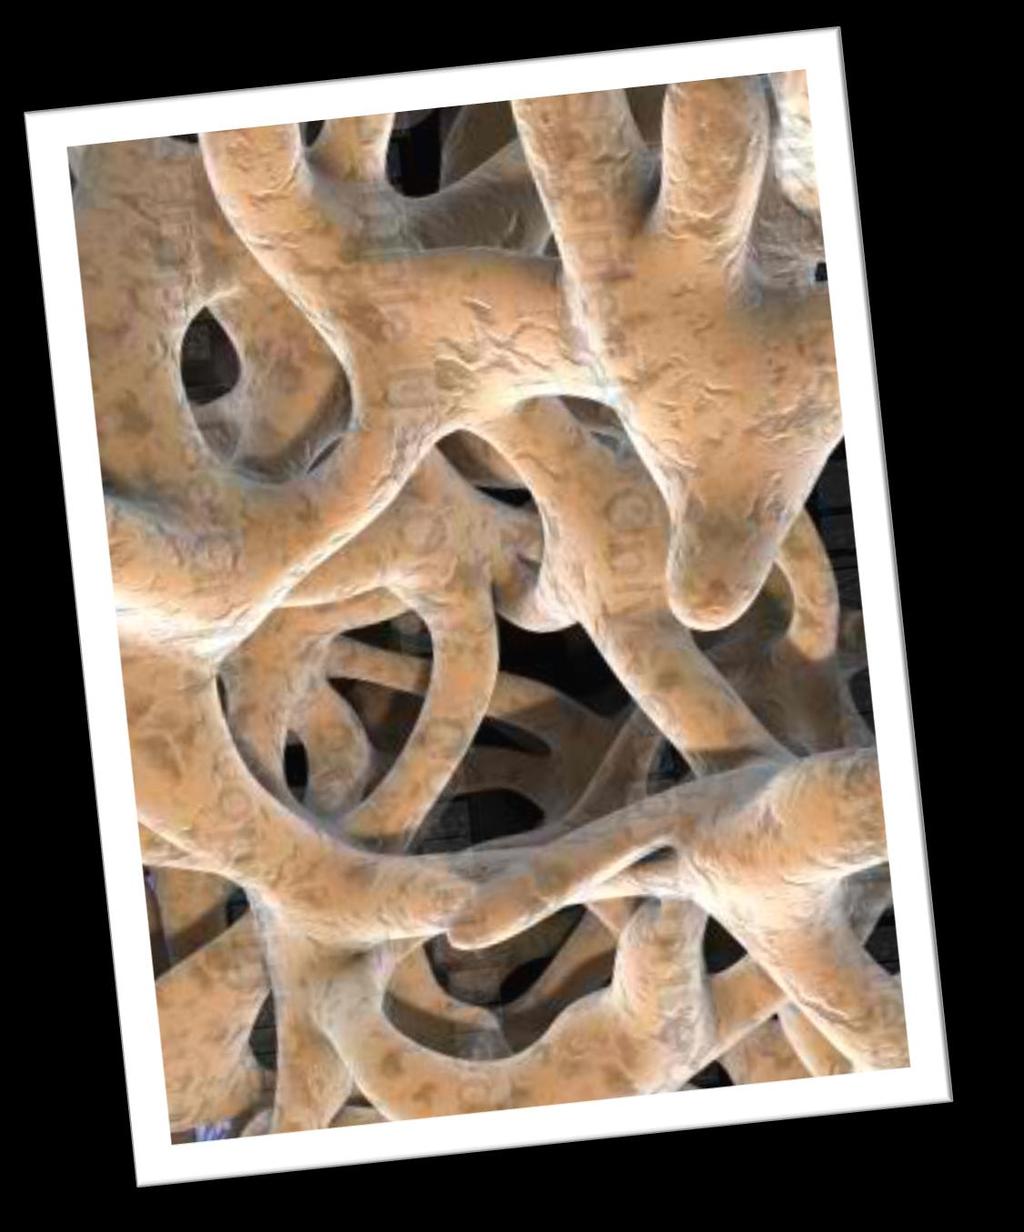 - Trabecular bone tissue (haphazard arrangement).